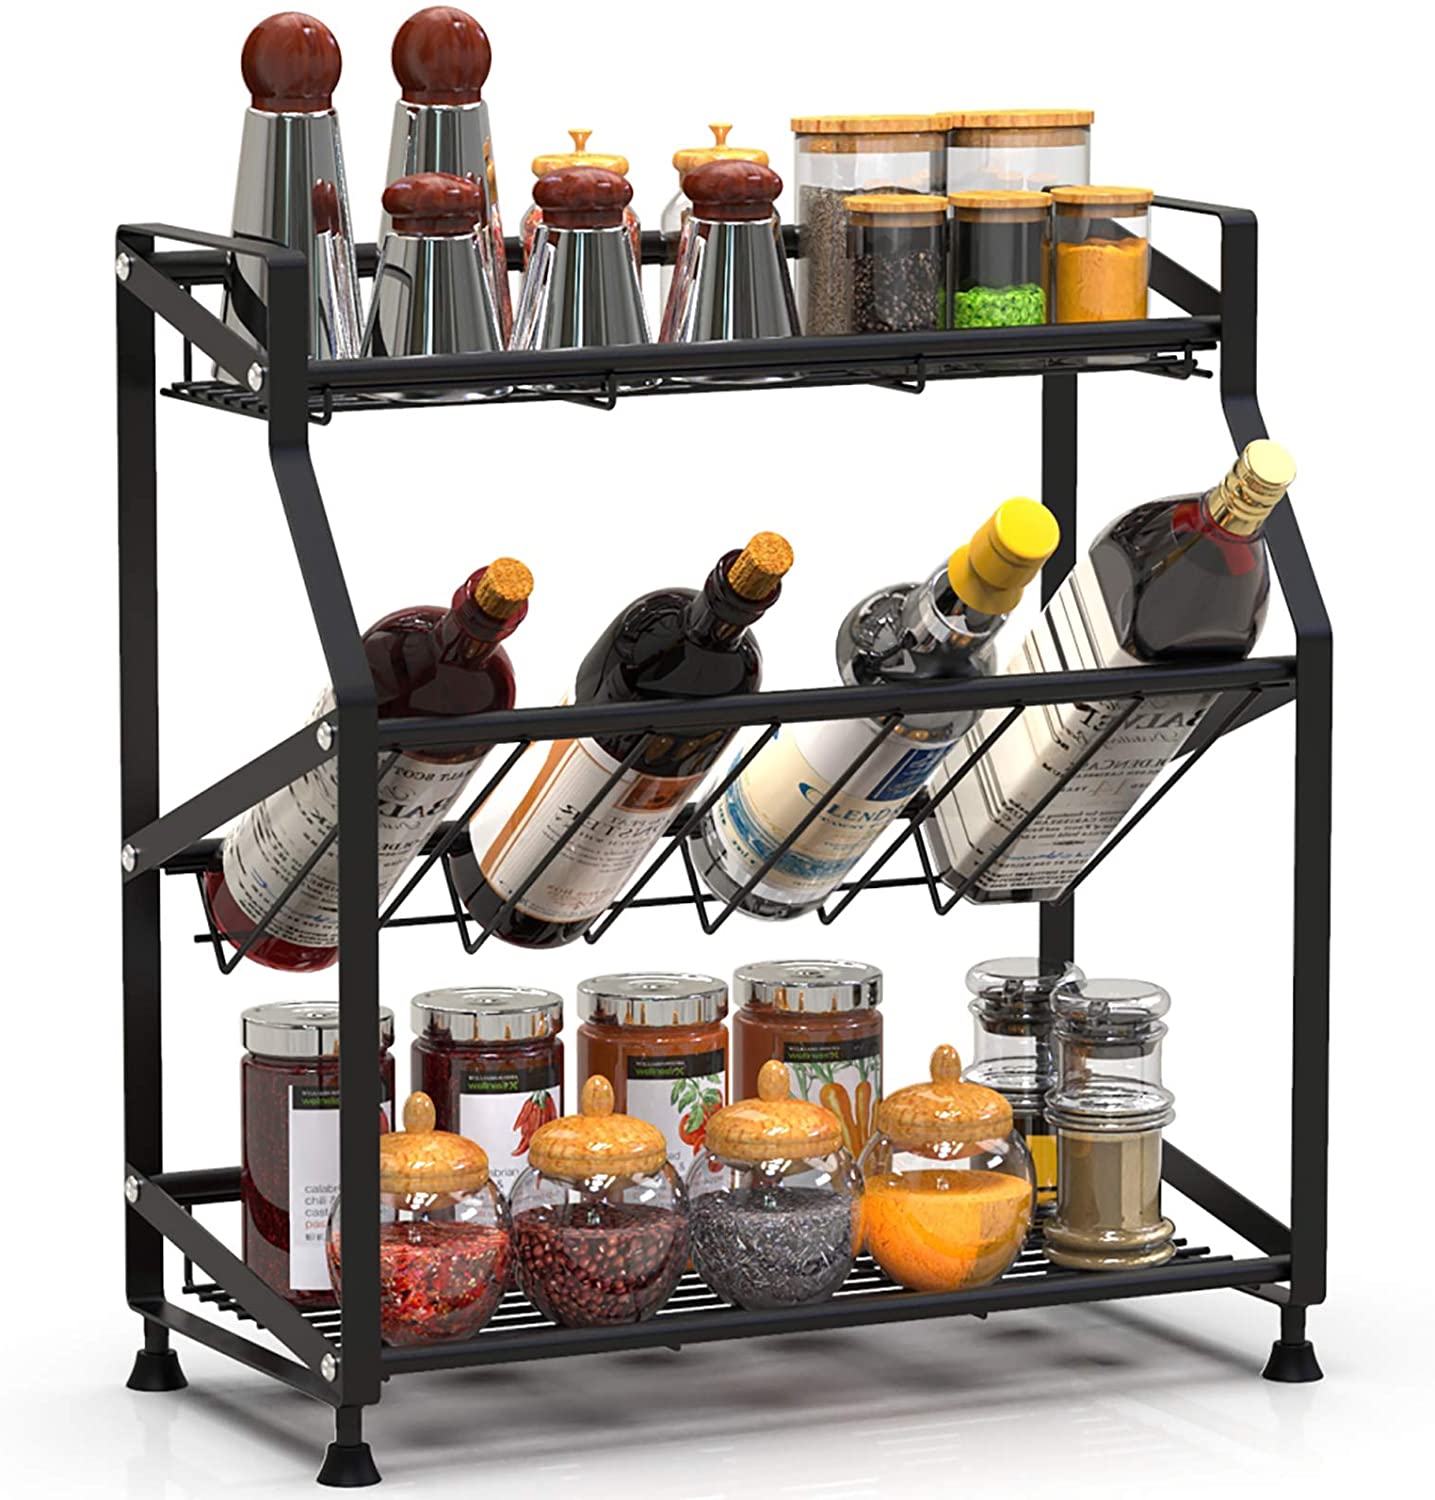 Spice Rack Organizer 3 Tiers Freestanding Kitchen Metal Spice Holder Storage, Black - image 1 of 3